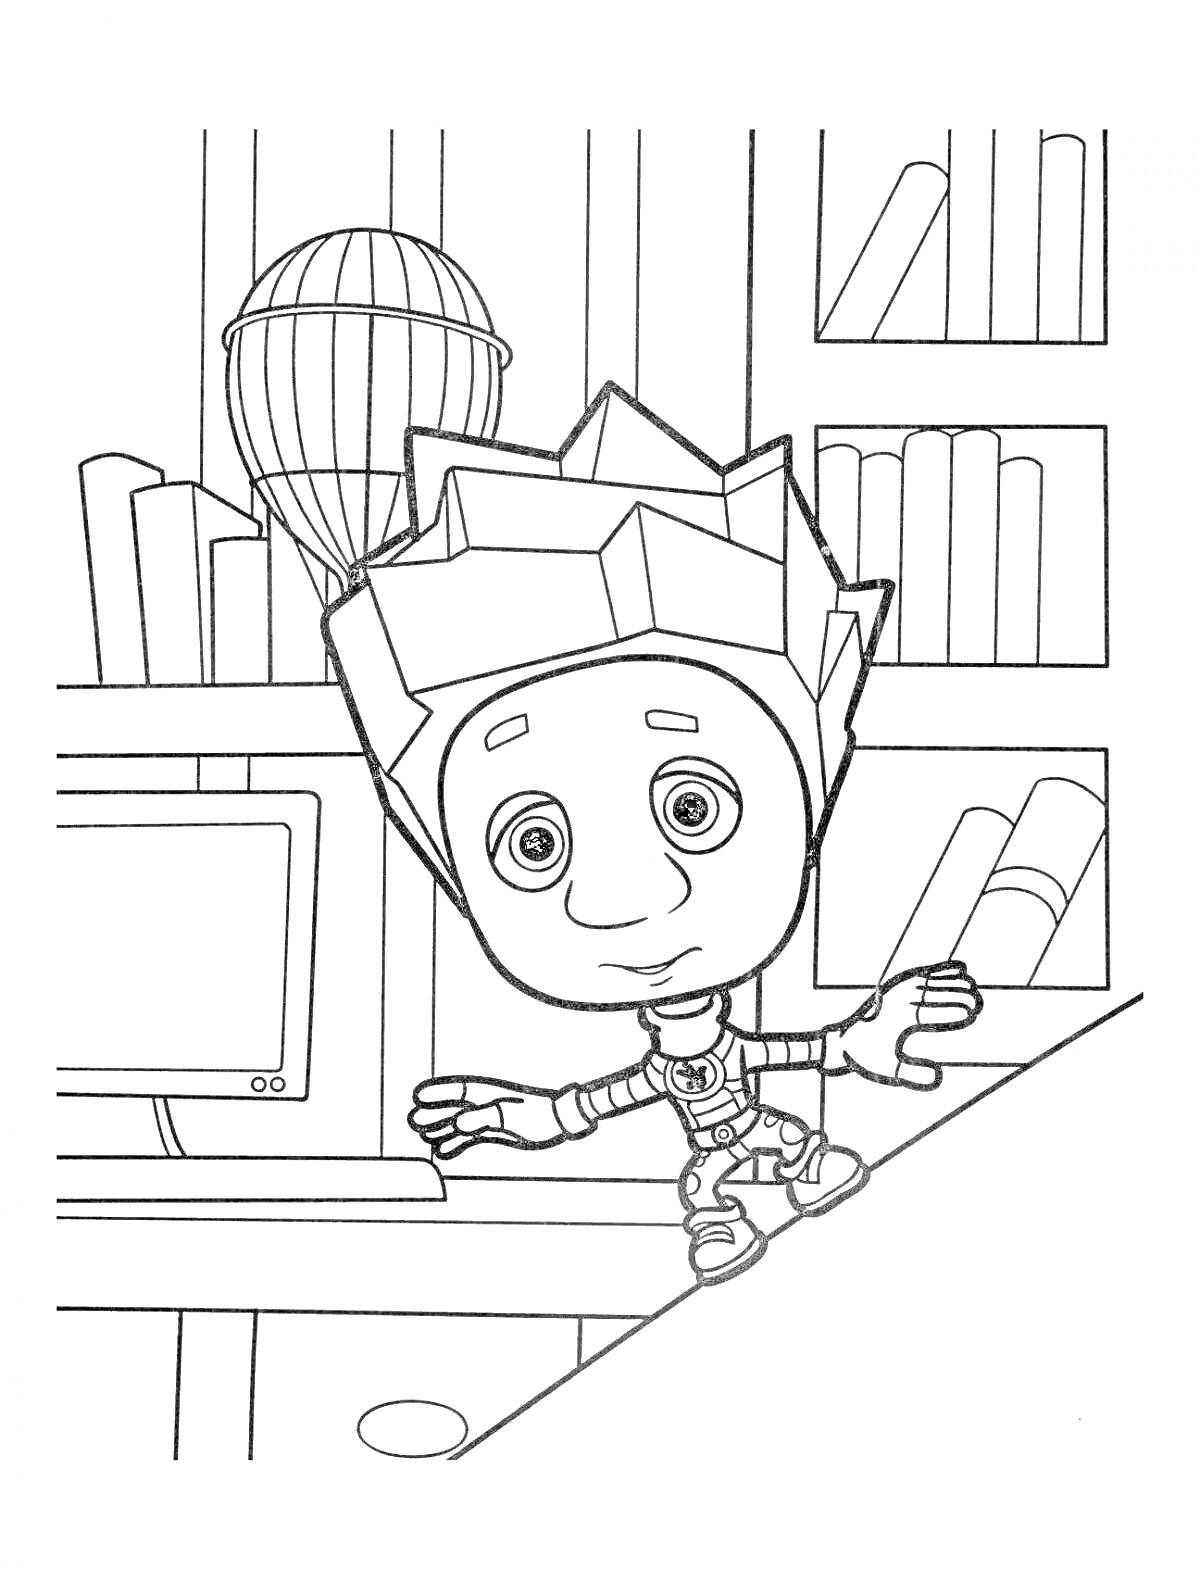 Раскраска Фиксик в библиотеке с компьютером и воздушным шаром